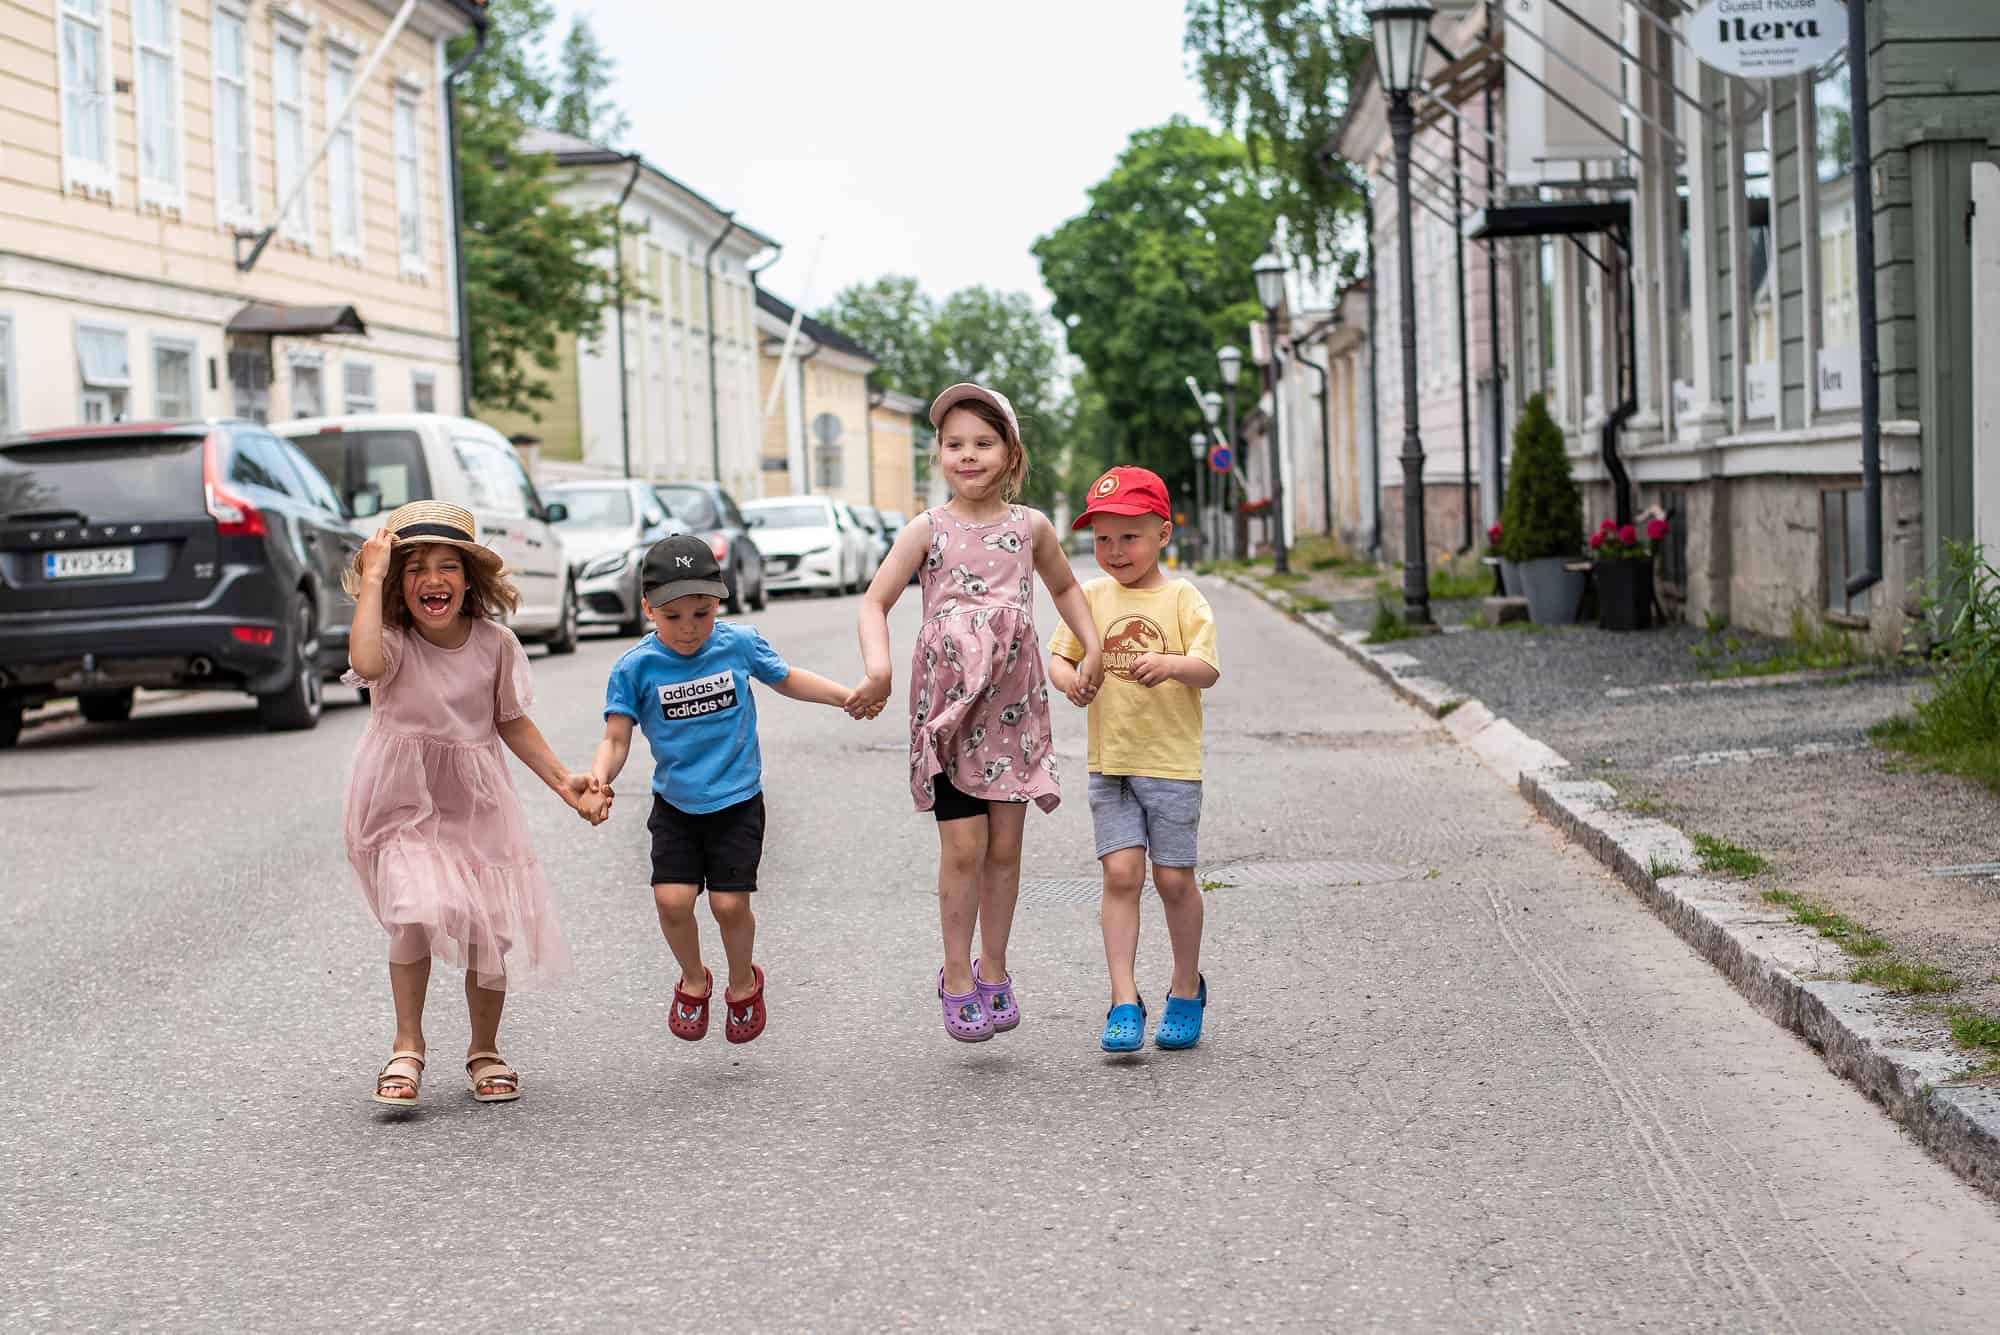 Neljä lasta käsikkäin Neristanin kadulla. Sää on kesäinen.